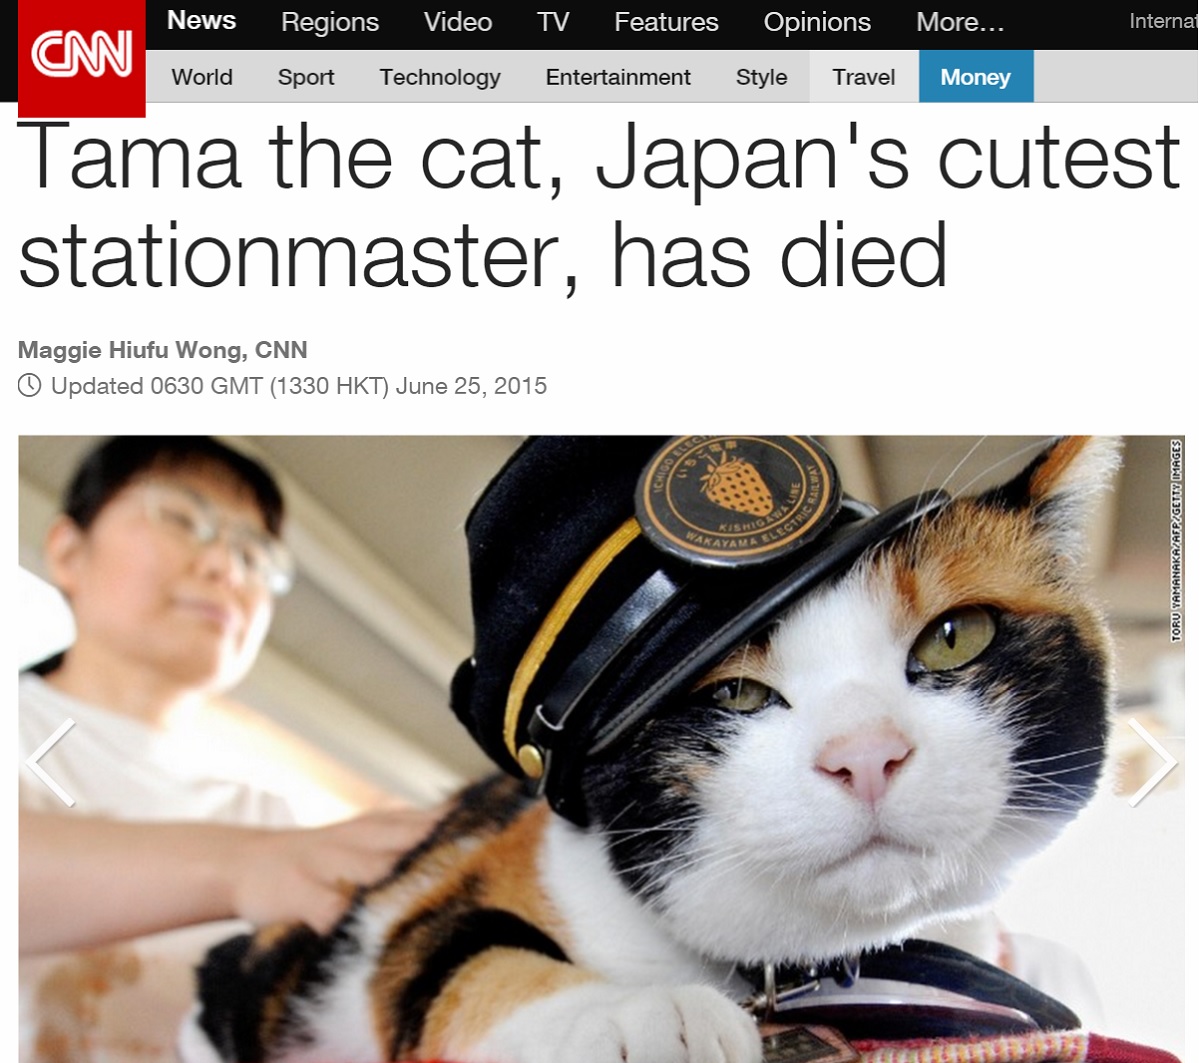 일본의 고양이 역장 '타마'의 사망 소식을 알린 CNN의 기사.